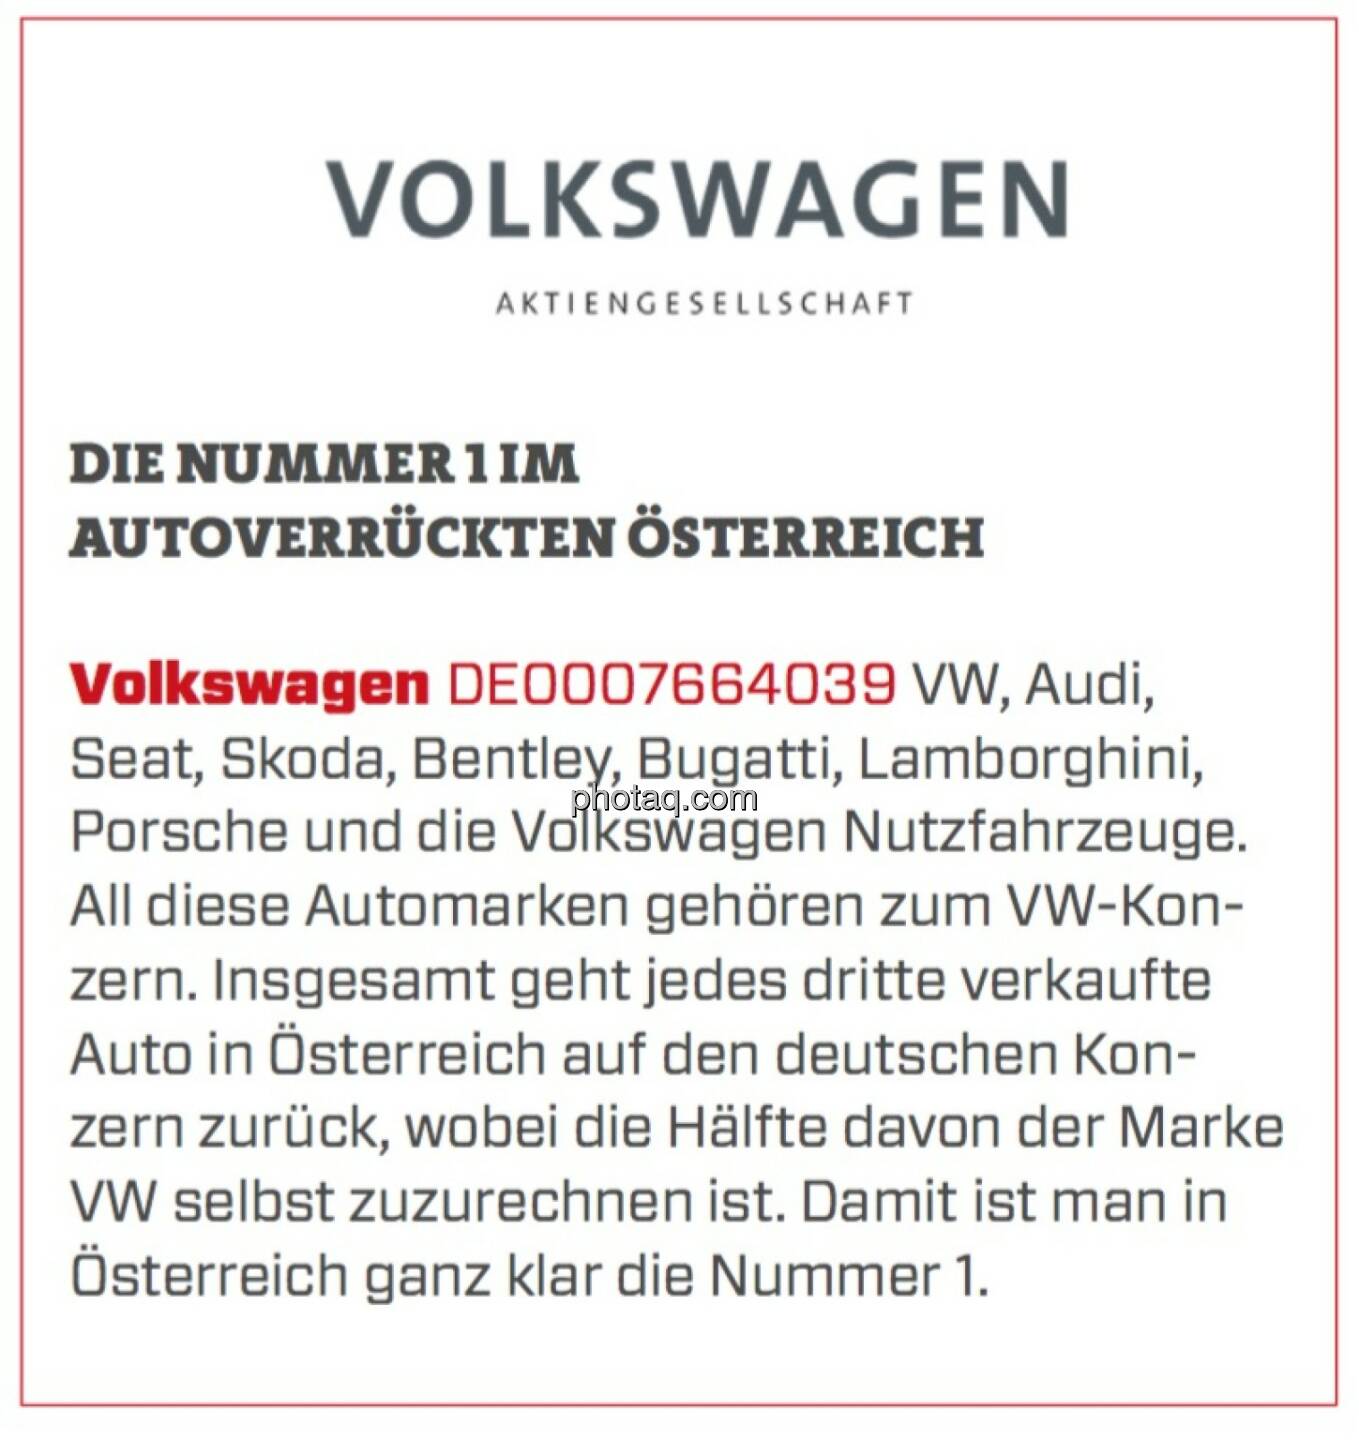 Volkswagen - Die Nummer 1 im autoverrückten Österreich: VW, Audi, Seat, Skoda, Bentley, Bugatti, Lamborghini, Porsche und die Volkswagen Nutzfahrzeuge. All diese Automarken gehören zum VW-Konzern. Insgesamt geht jedes dritte verkaufte Auto in Österreich auf den deutschen Konzern zurück, wobei die Hälfte davon der Marke VW selbst zuzurechnen ist. Damit ist man in Österreich ganz klar die Nummer 1.